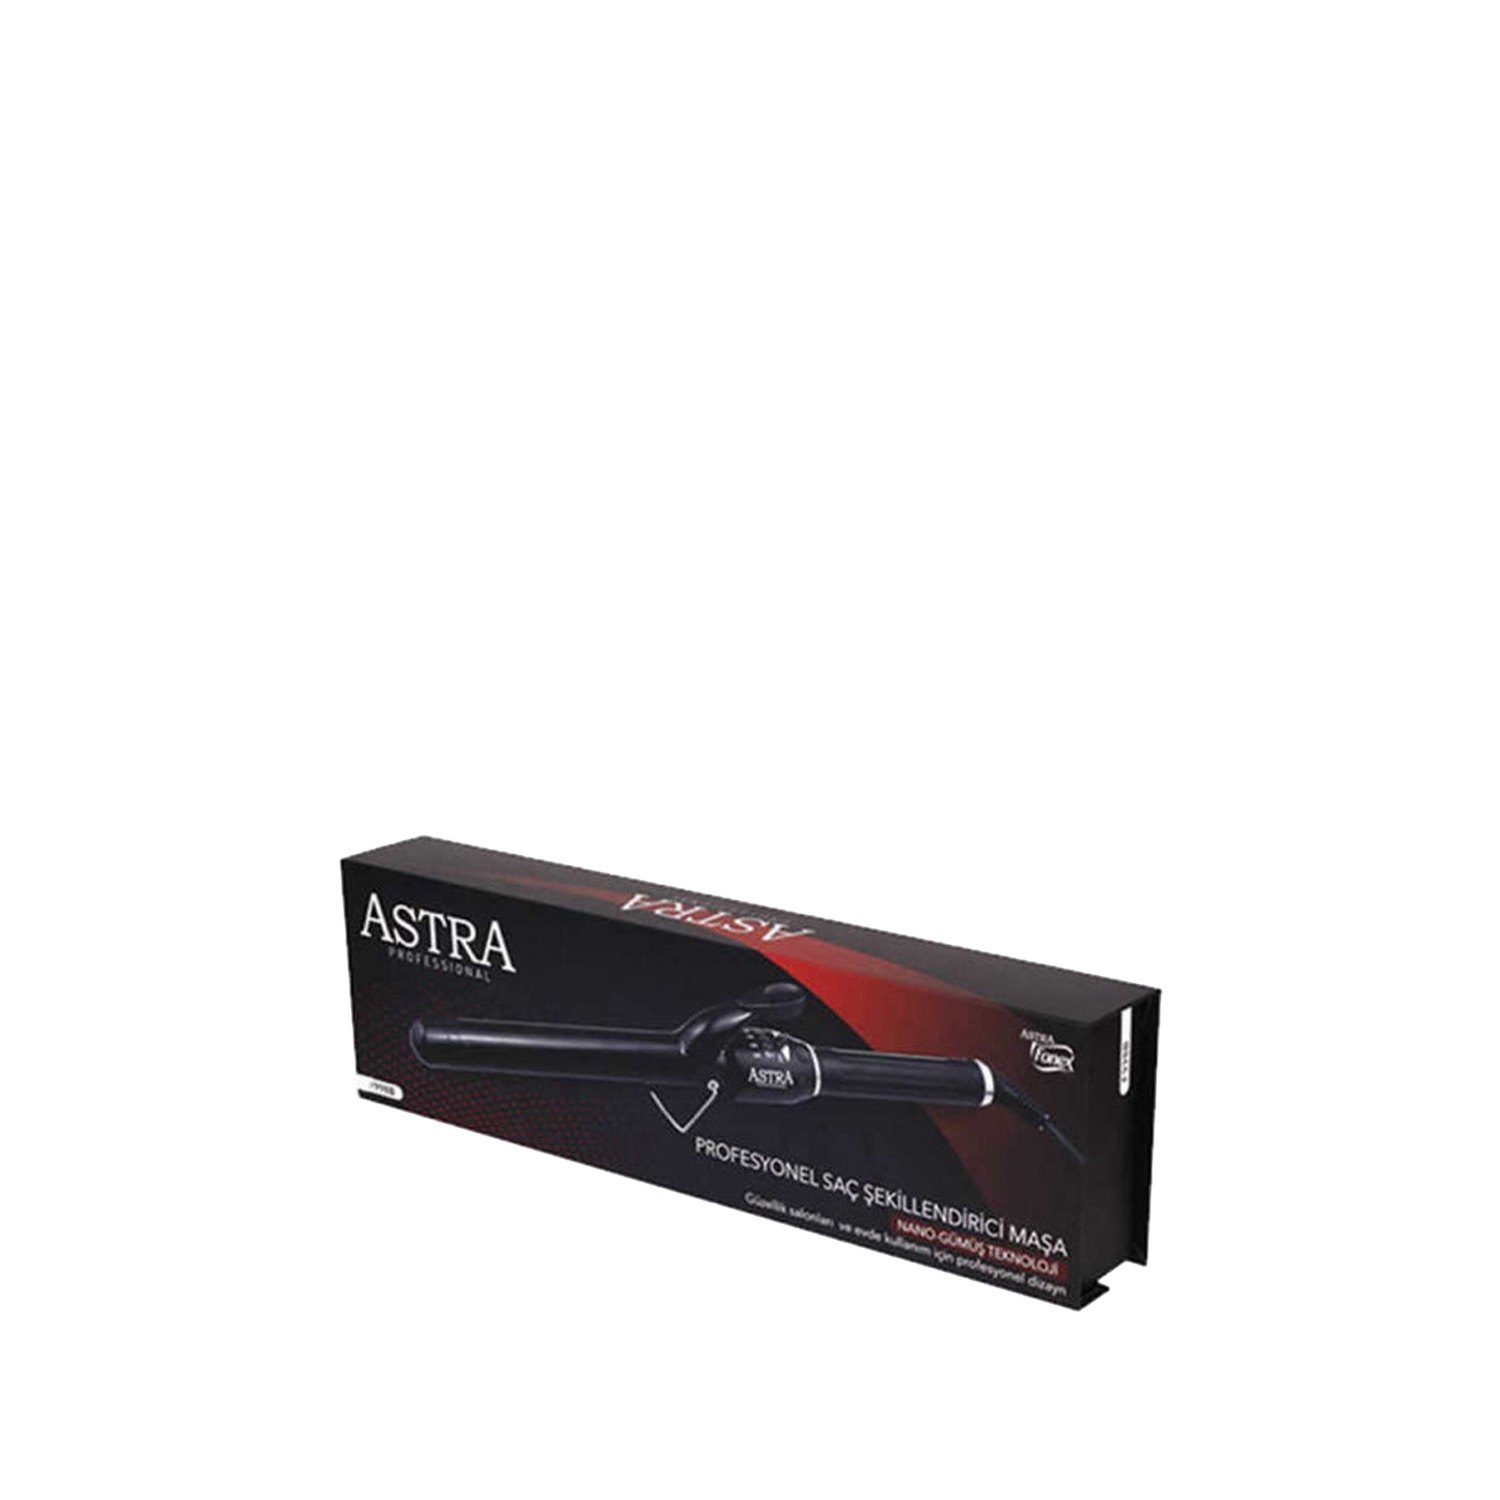 Astra Professional Saç Şekillendirici Maşa F998B 16mm